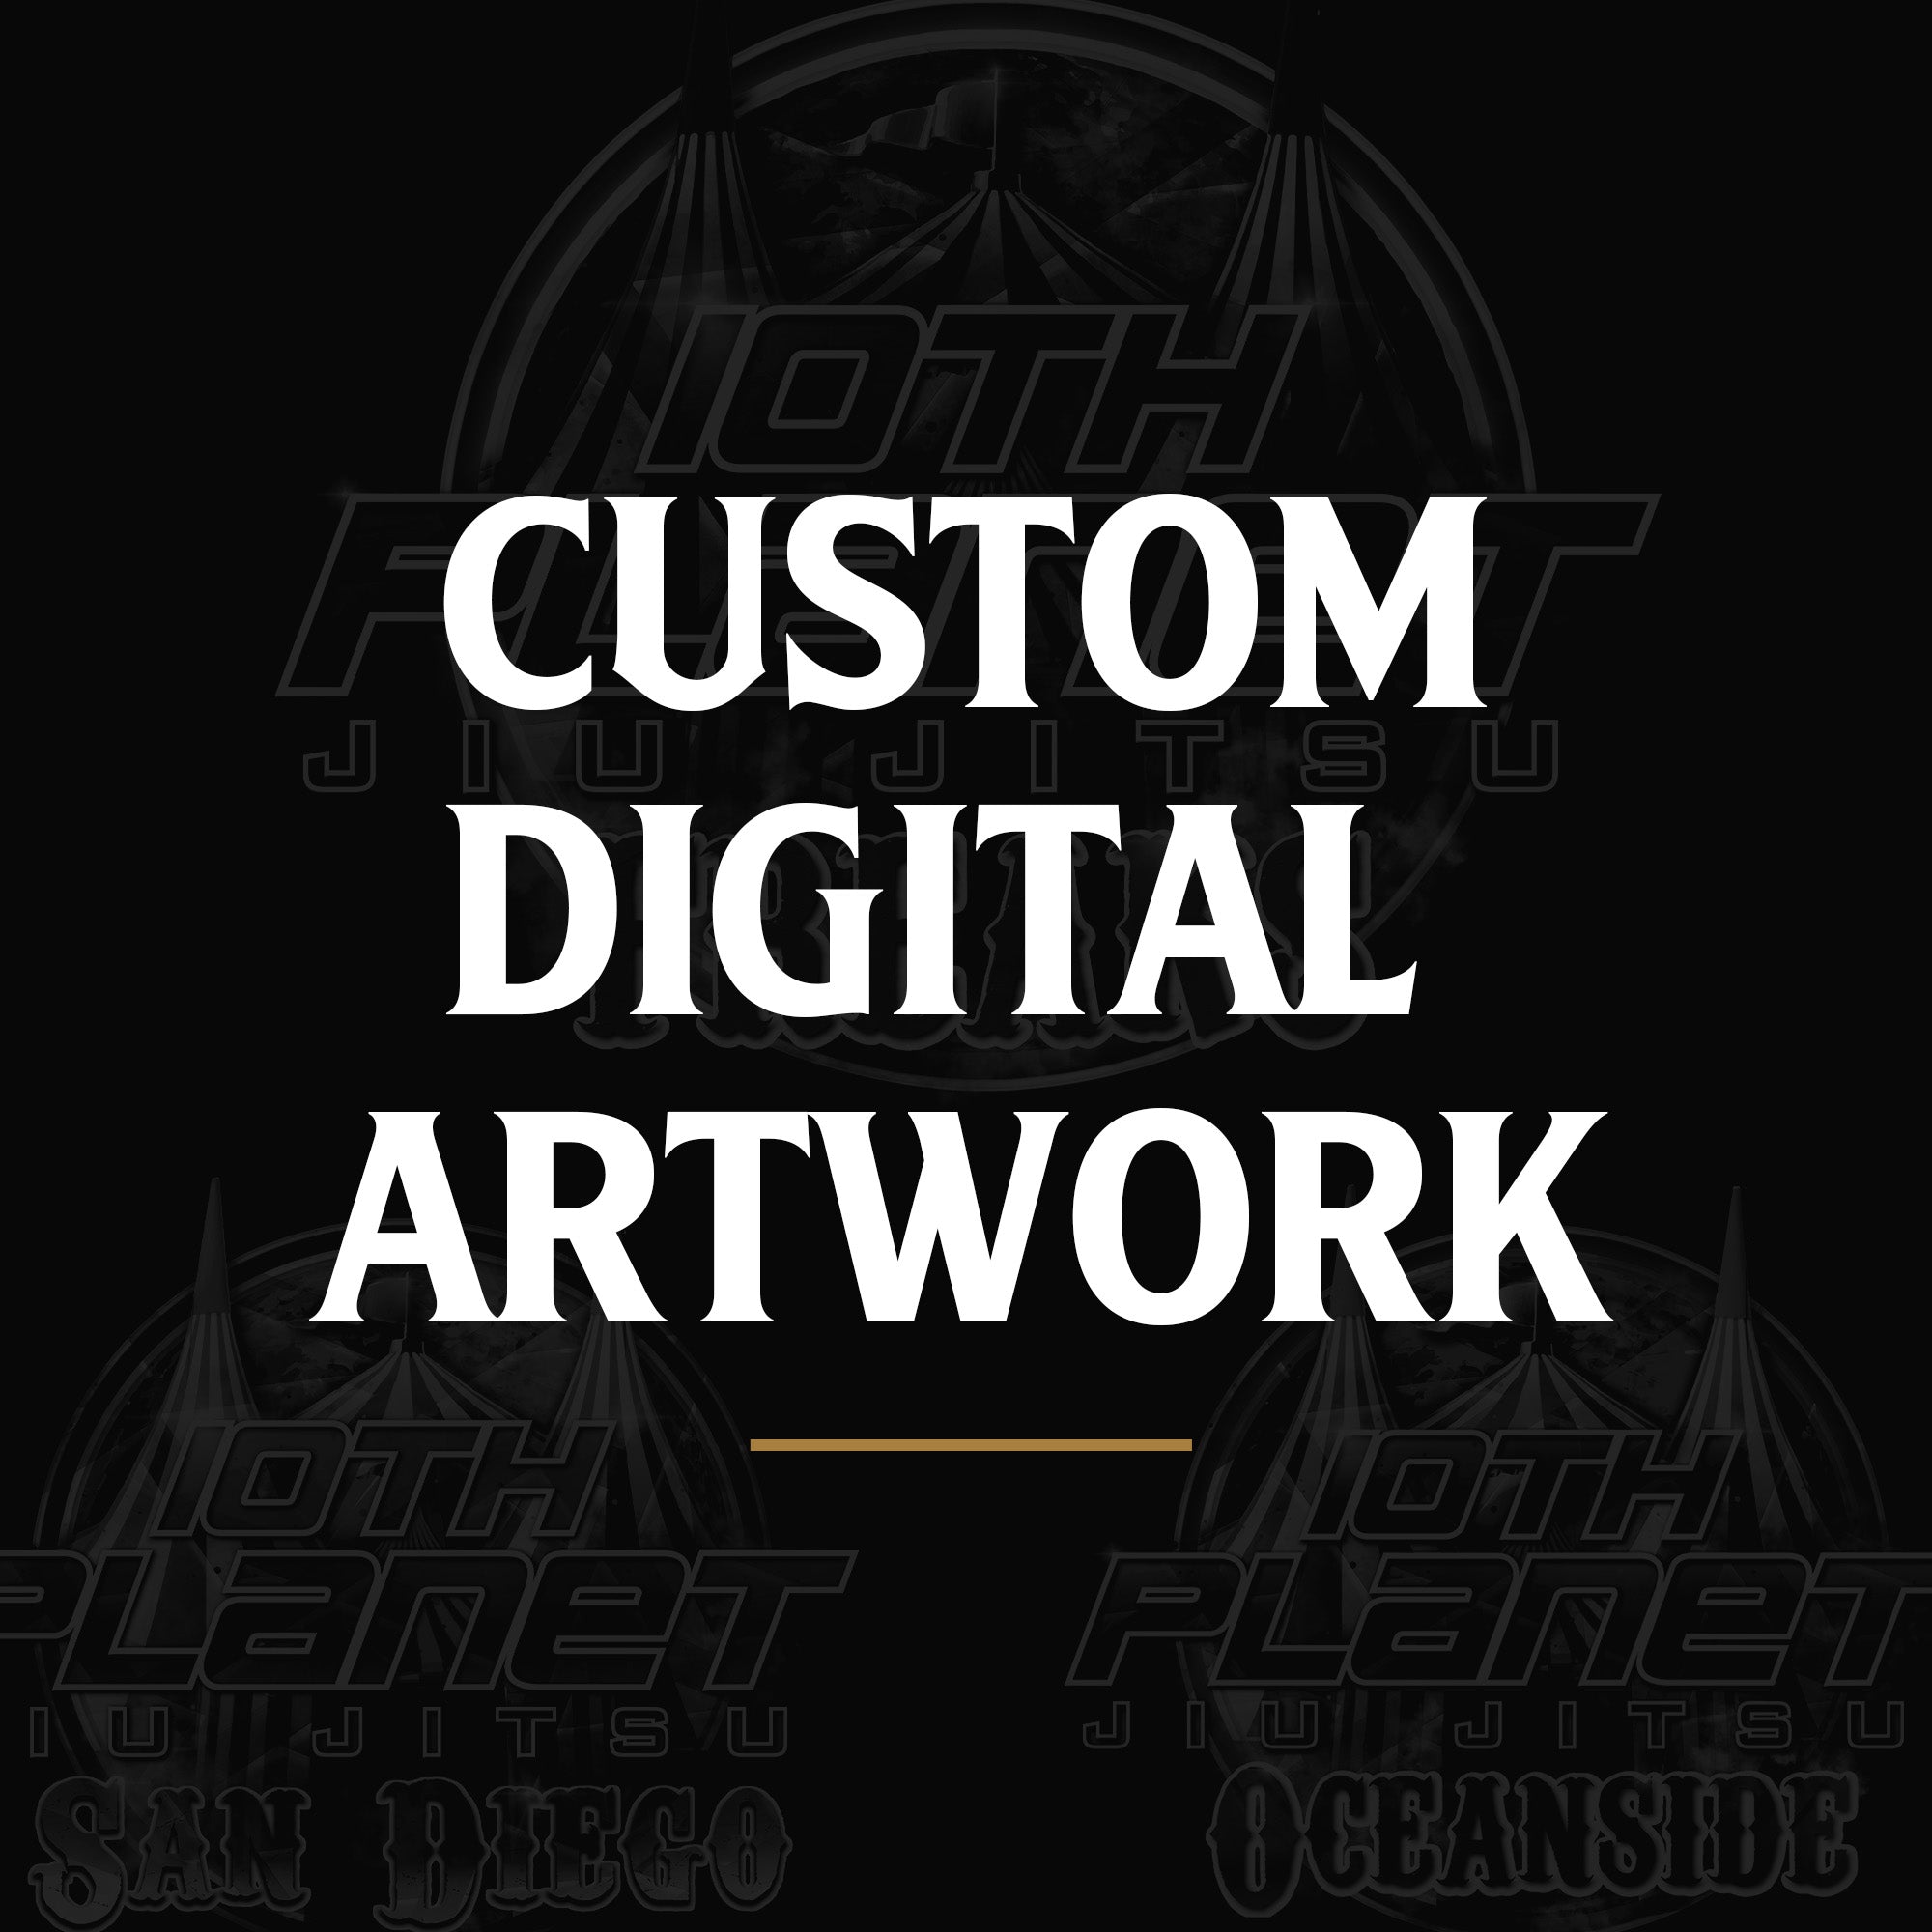 Custom Digital Artwork Graphic Design Services by Eagr Ones